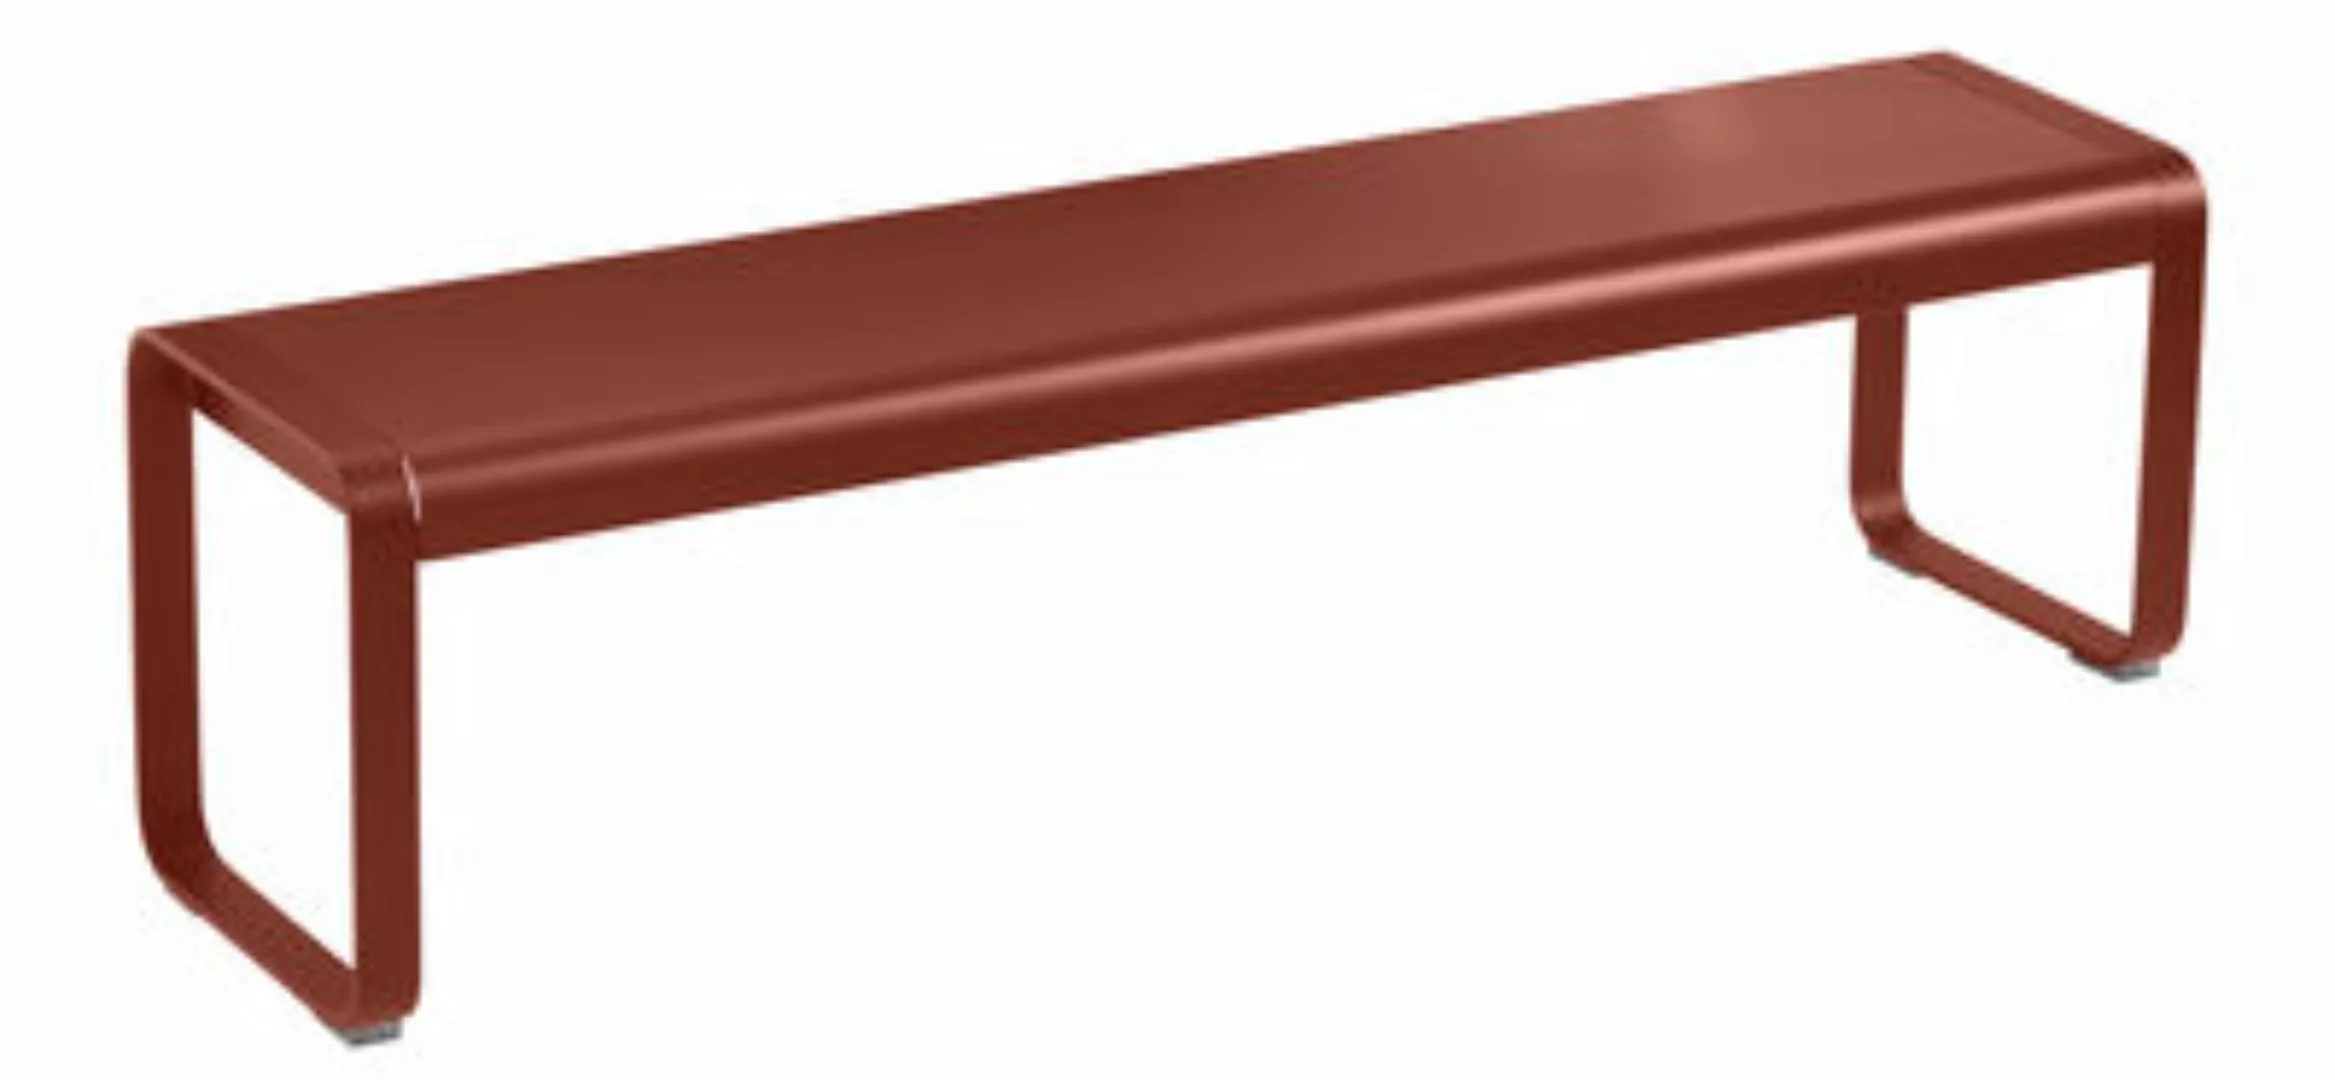 Bank Bellevie metall rot braun / L 161 cm - 4-Sitzer - Fermob - Braun günstig online kaufen